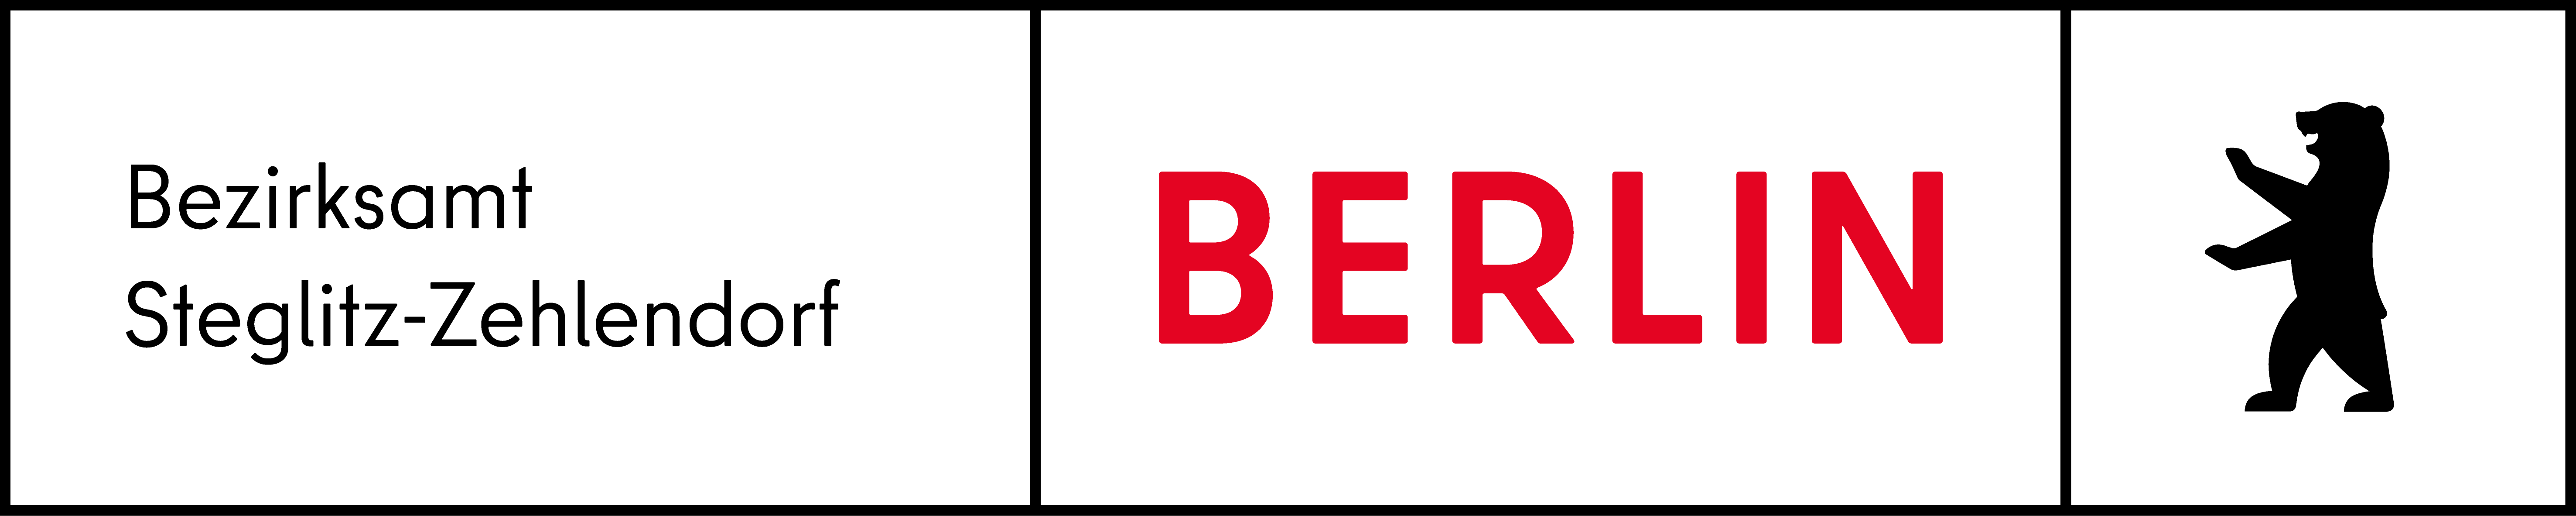 Logo Bezirksamt Steglitz-Zehlendorf BE